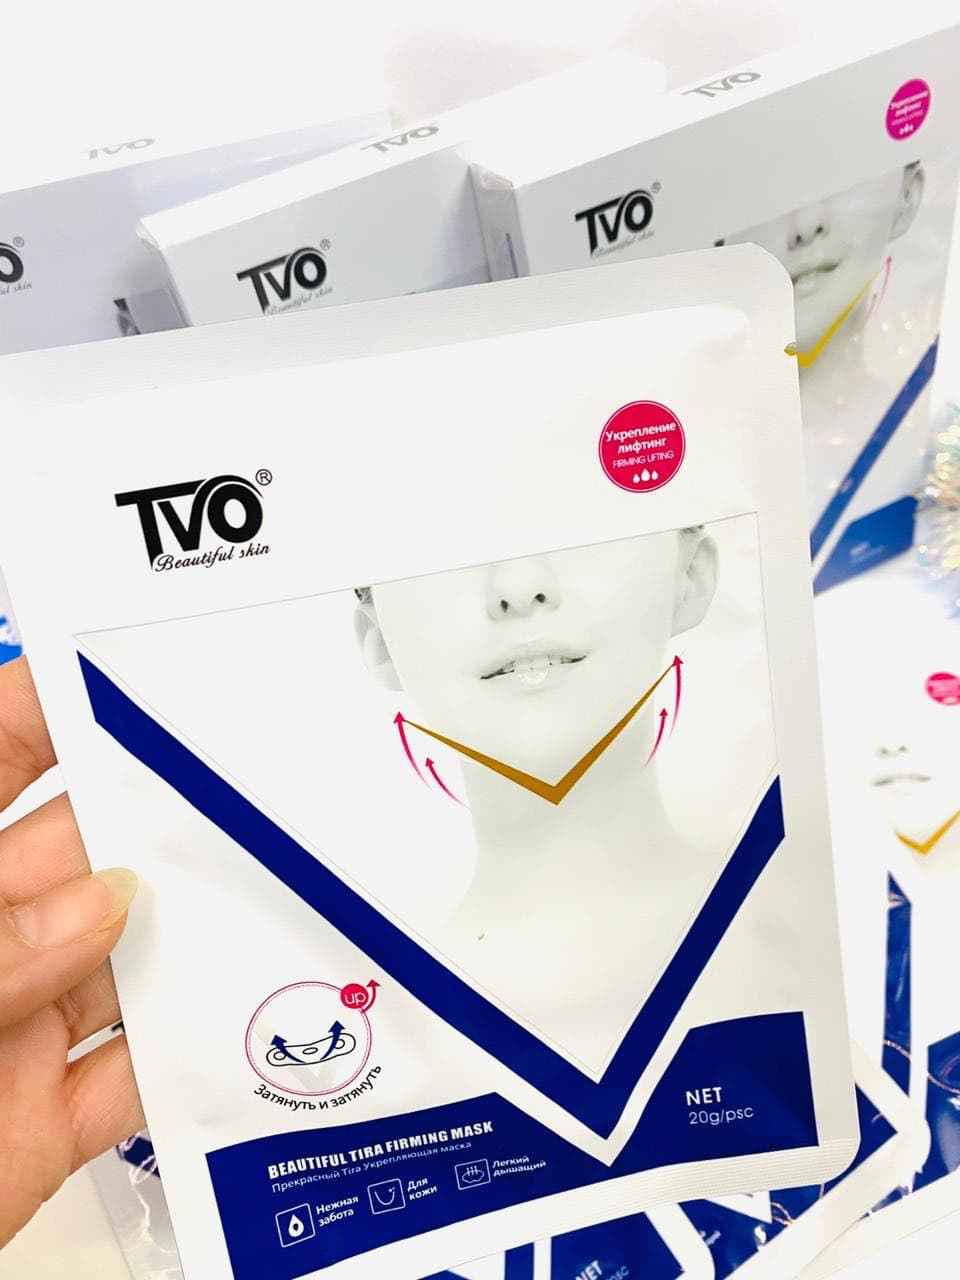 Подтягивающая лифтинг-маска для лица TVO Beautiful Tira Firming Mask оптом